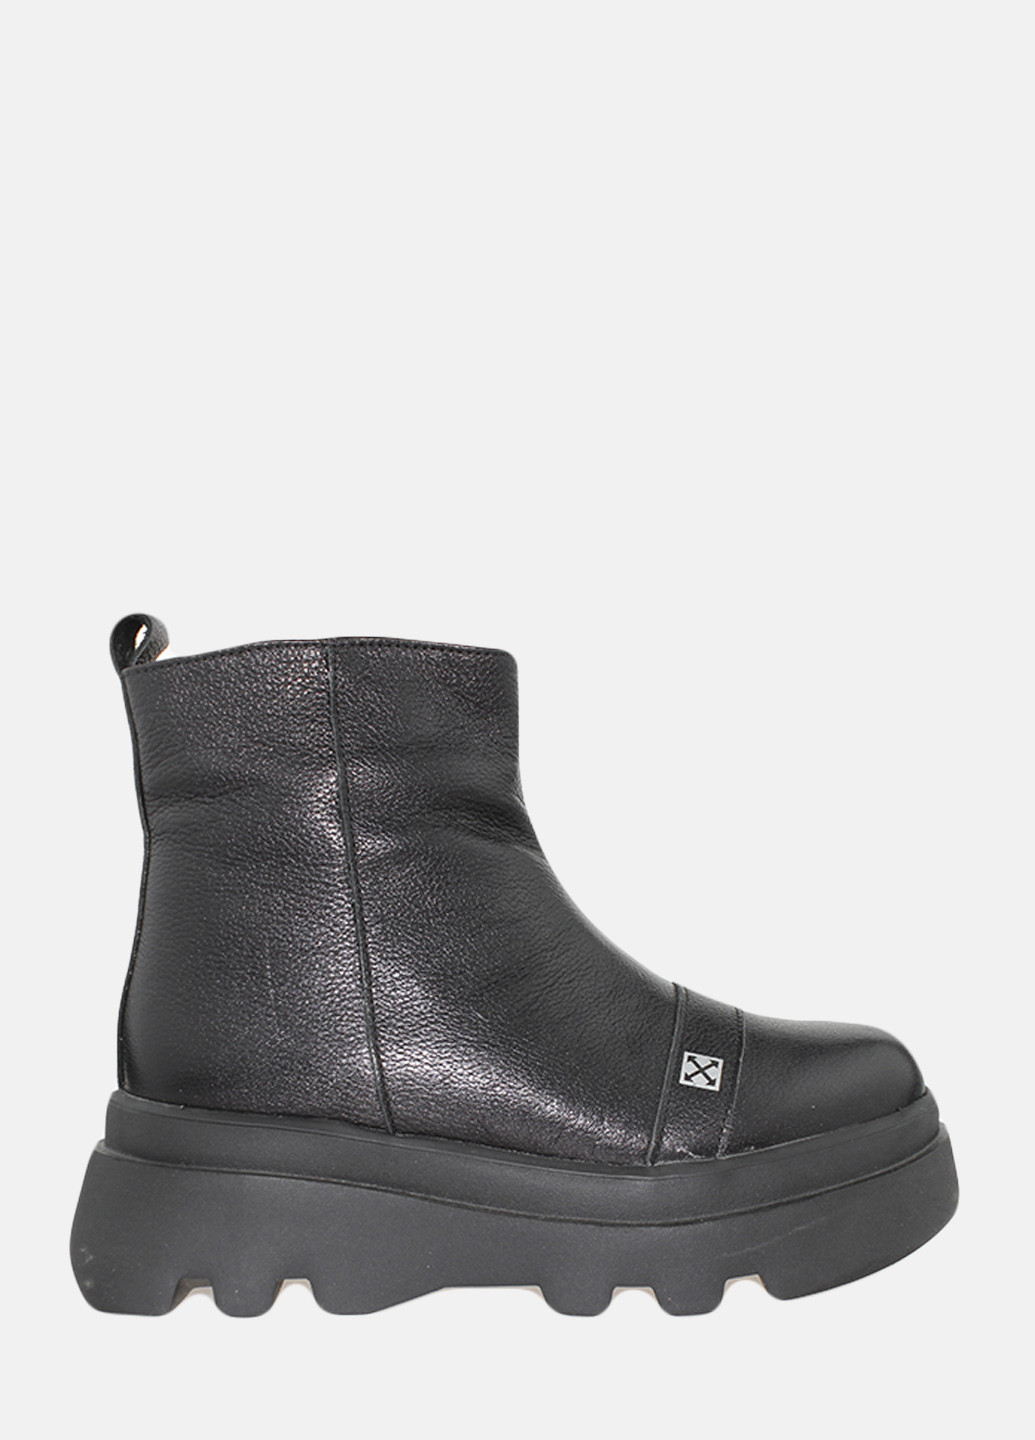 Зимние ботинки re2477-1 черный El passo